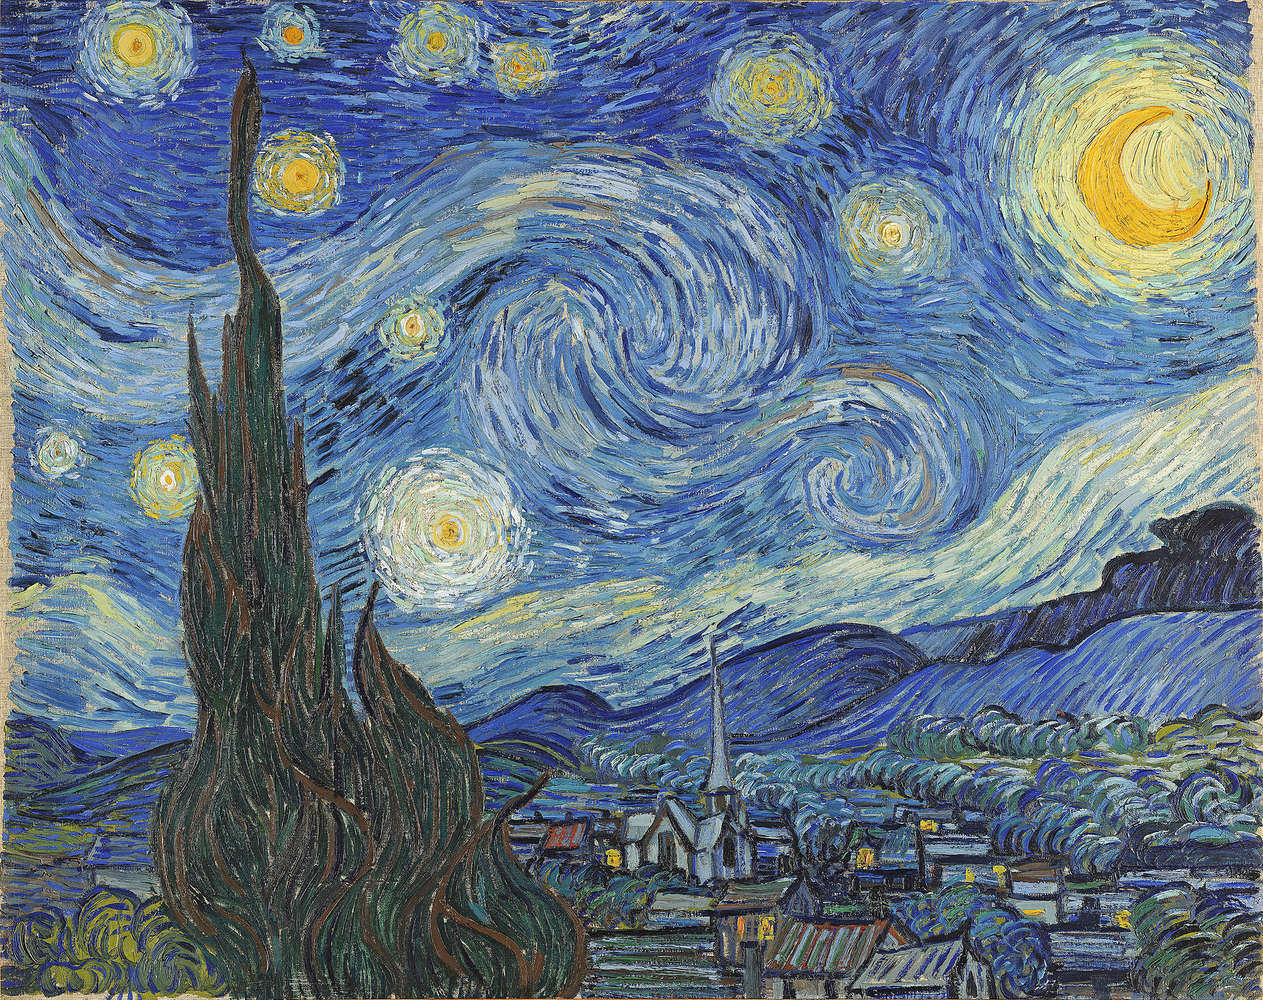             Mural "La noche estrellada" de Vincent van Gogh
        